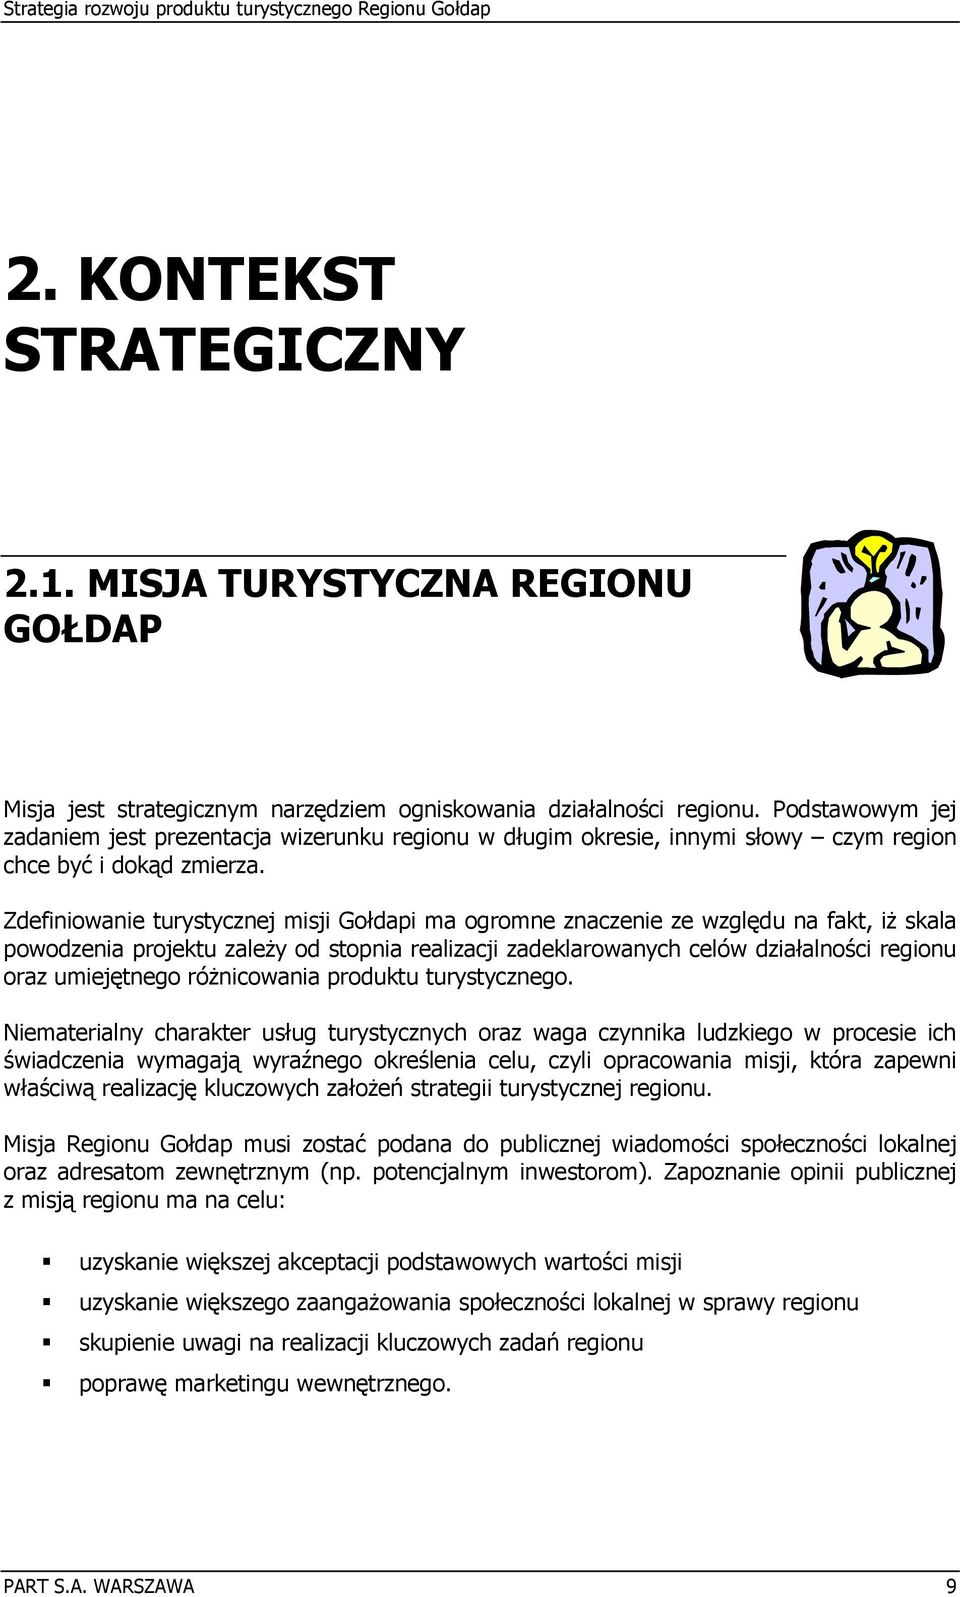 Zdefiniowanie turystycznej misji Gołdapi ma ogromne znaczenie ze względu na fakt, iż skala powodzenia projektu zależy od stopnia realizacji zadeklarowanych celów działalności regionu oraz umiejętnego